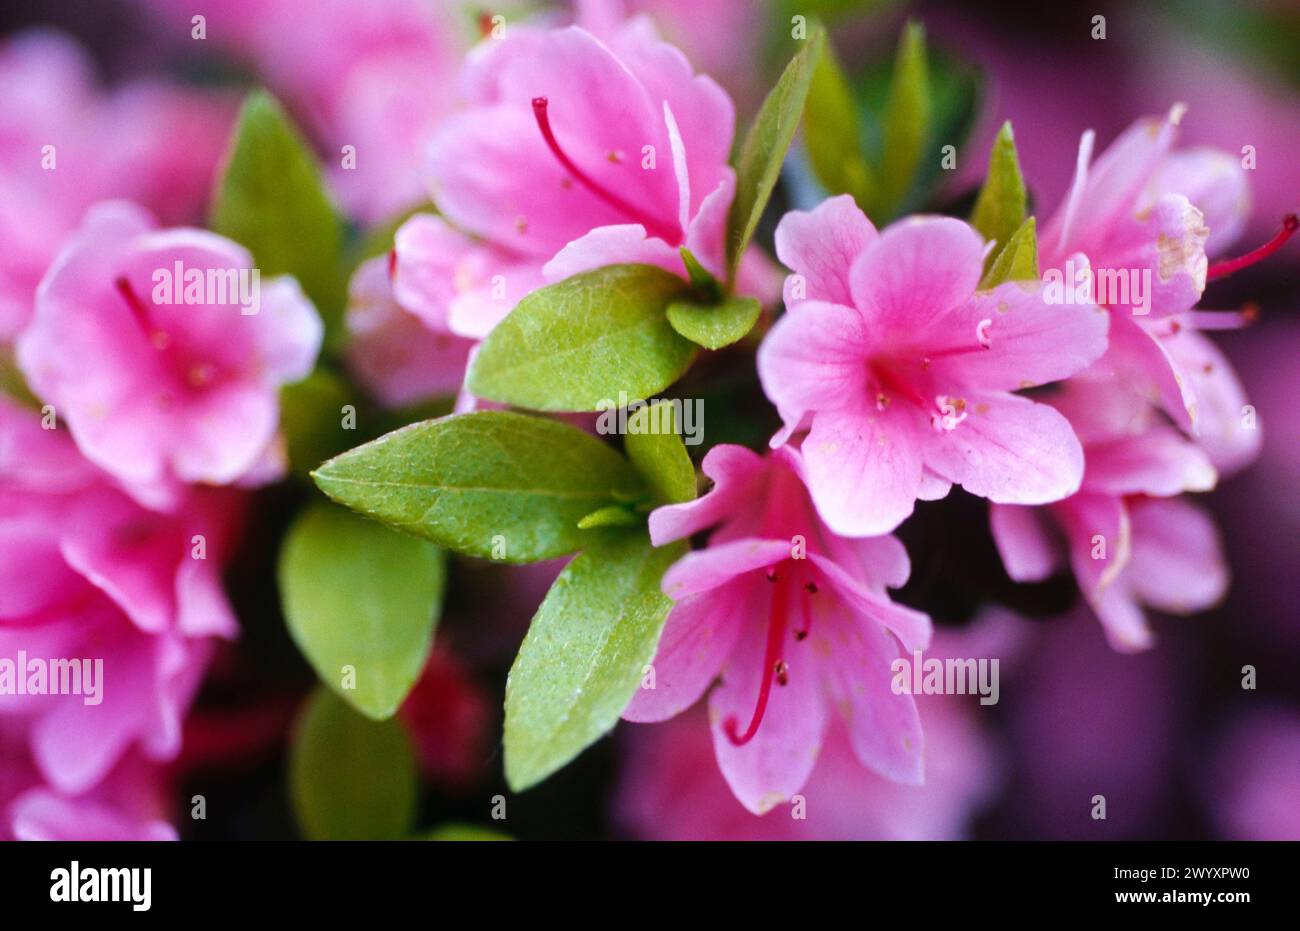 Rhododendron (Azalea mollis). Stock Photo